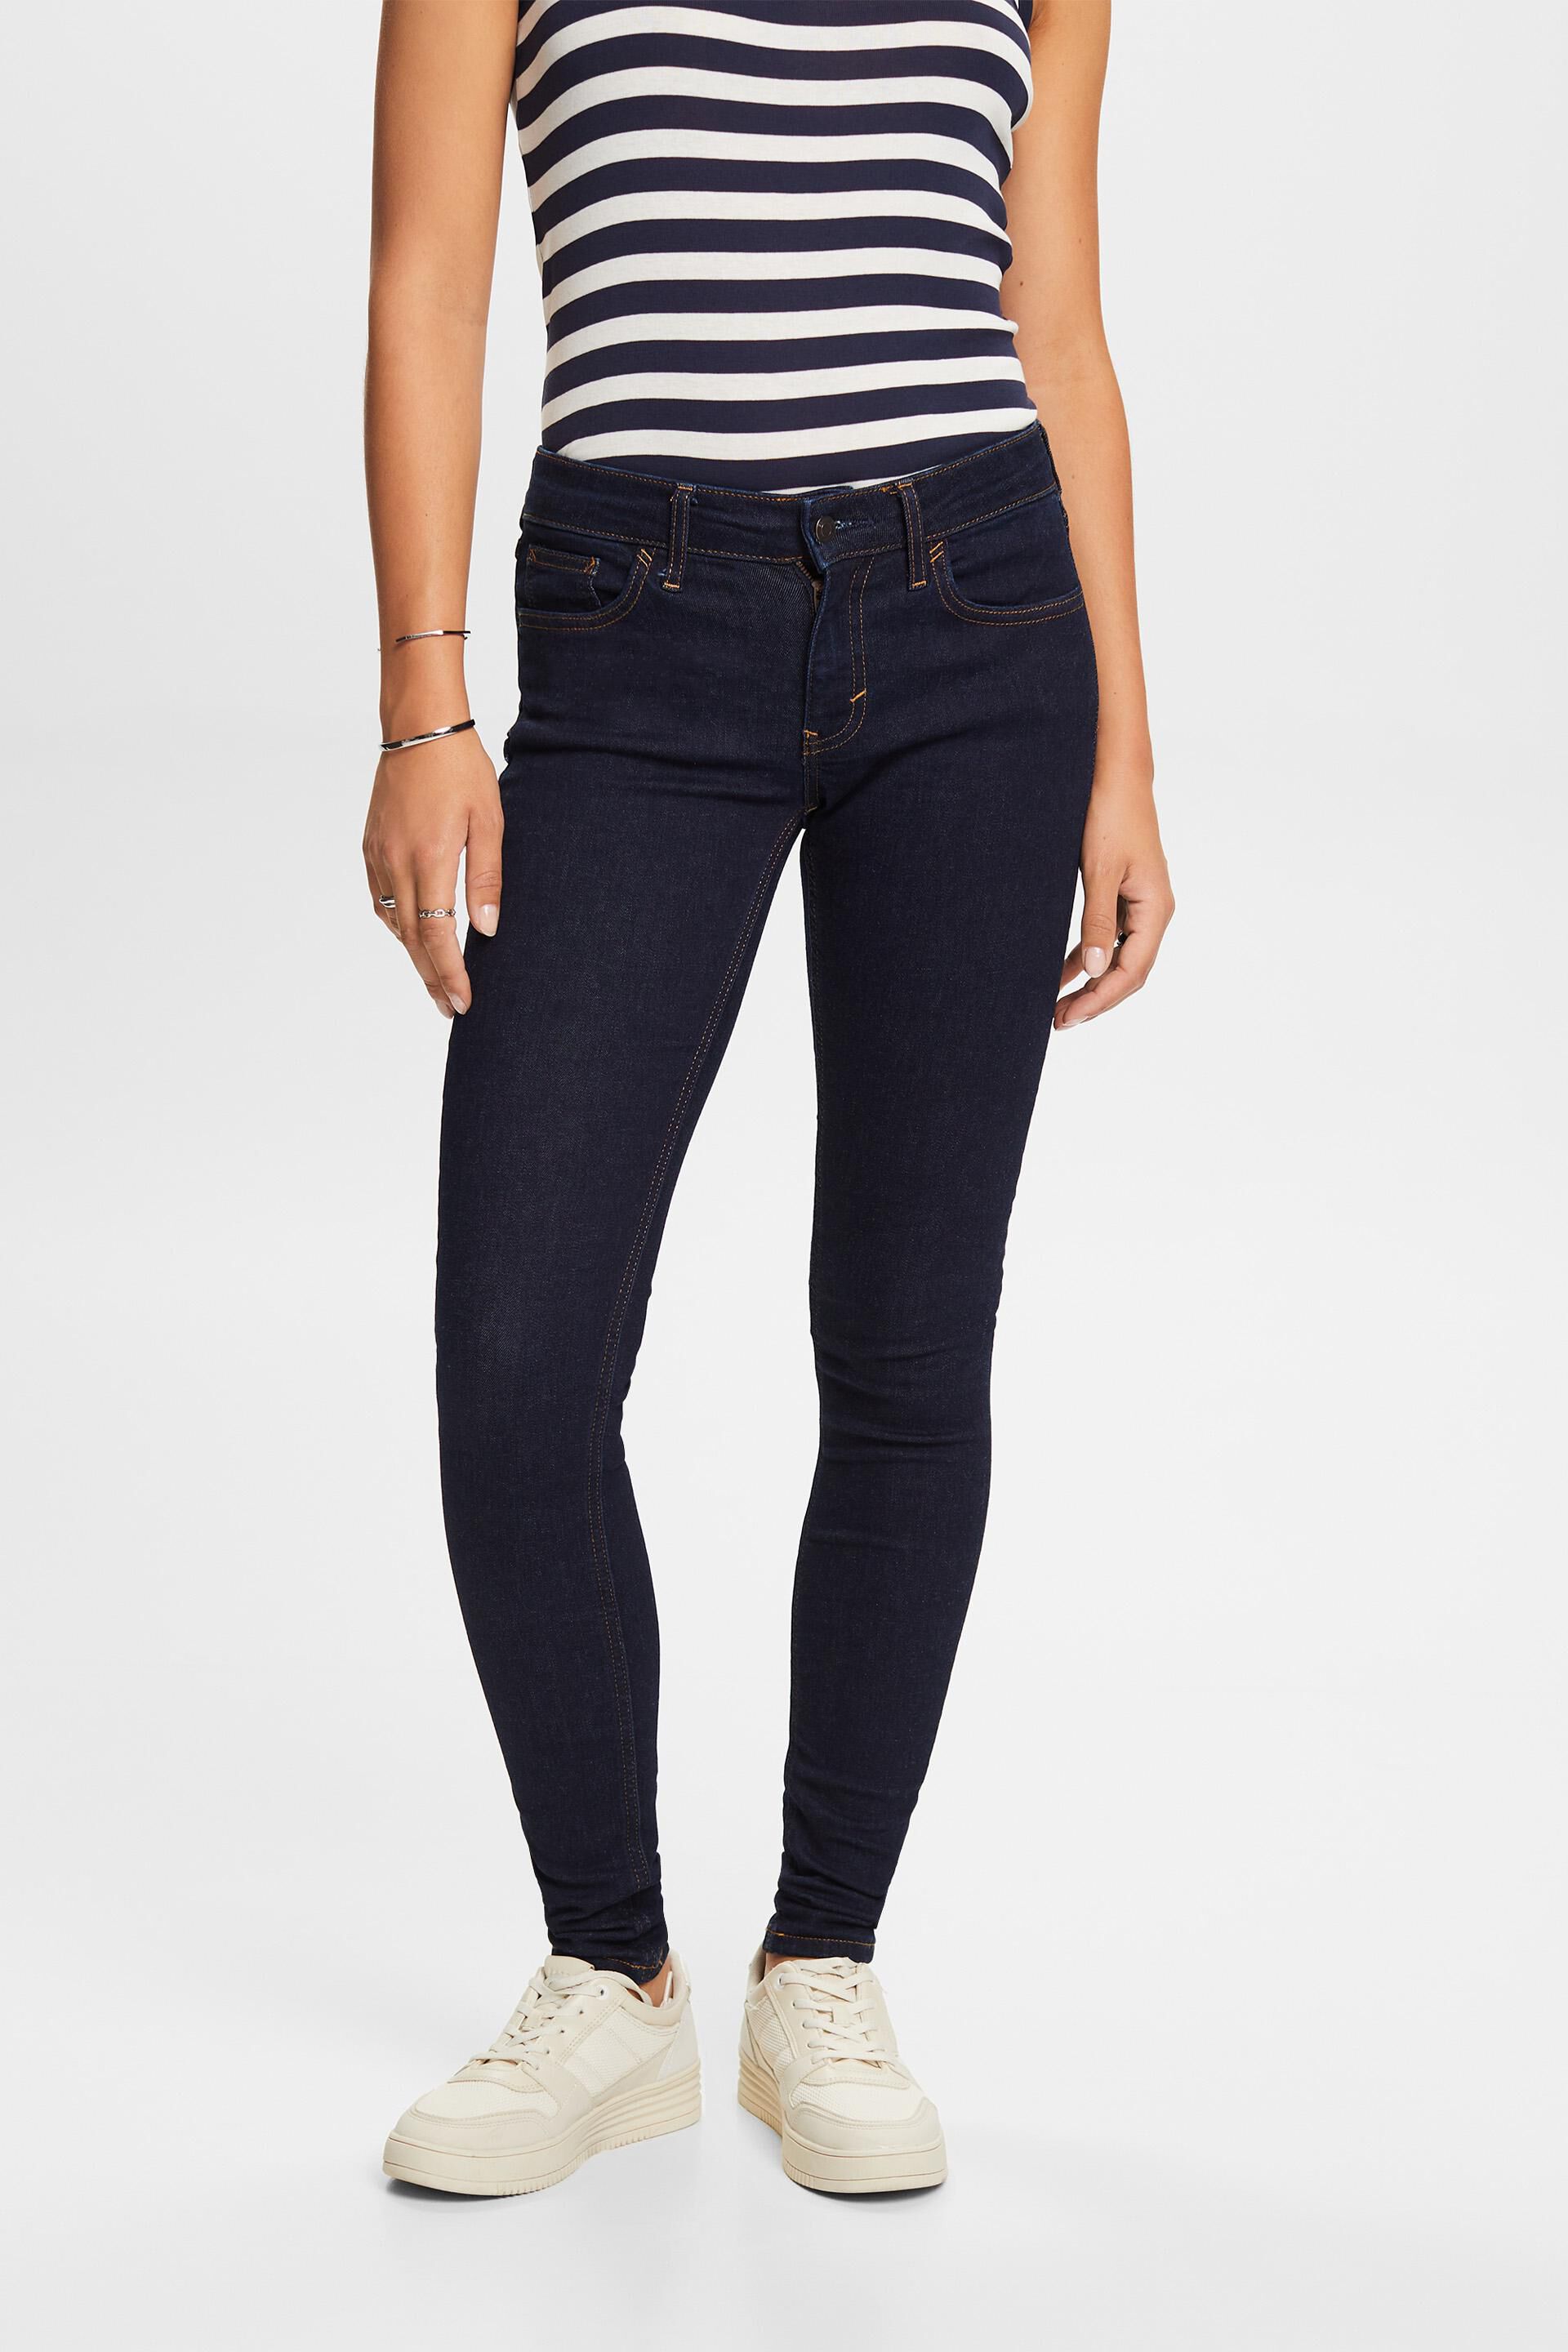 Esprit cotton Stretch jeans, blend